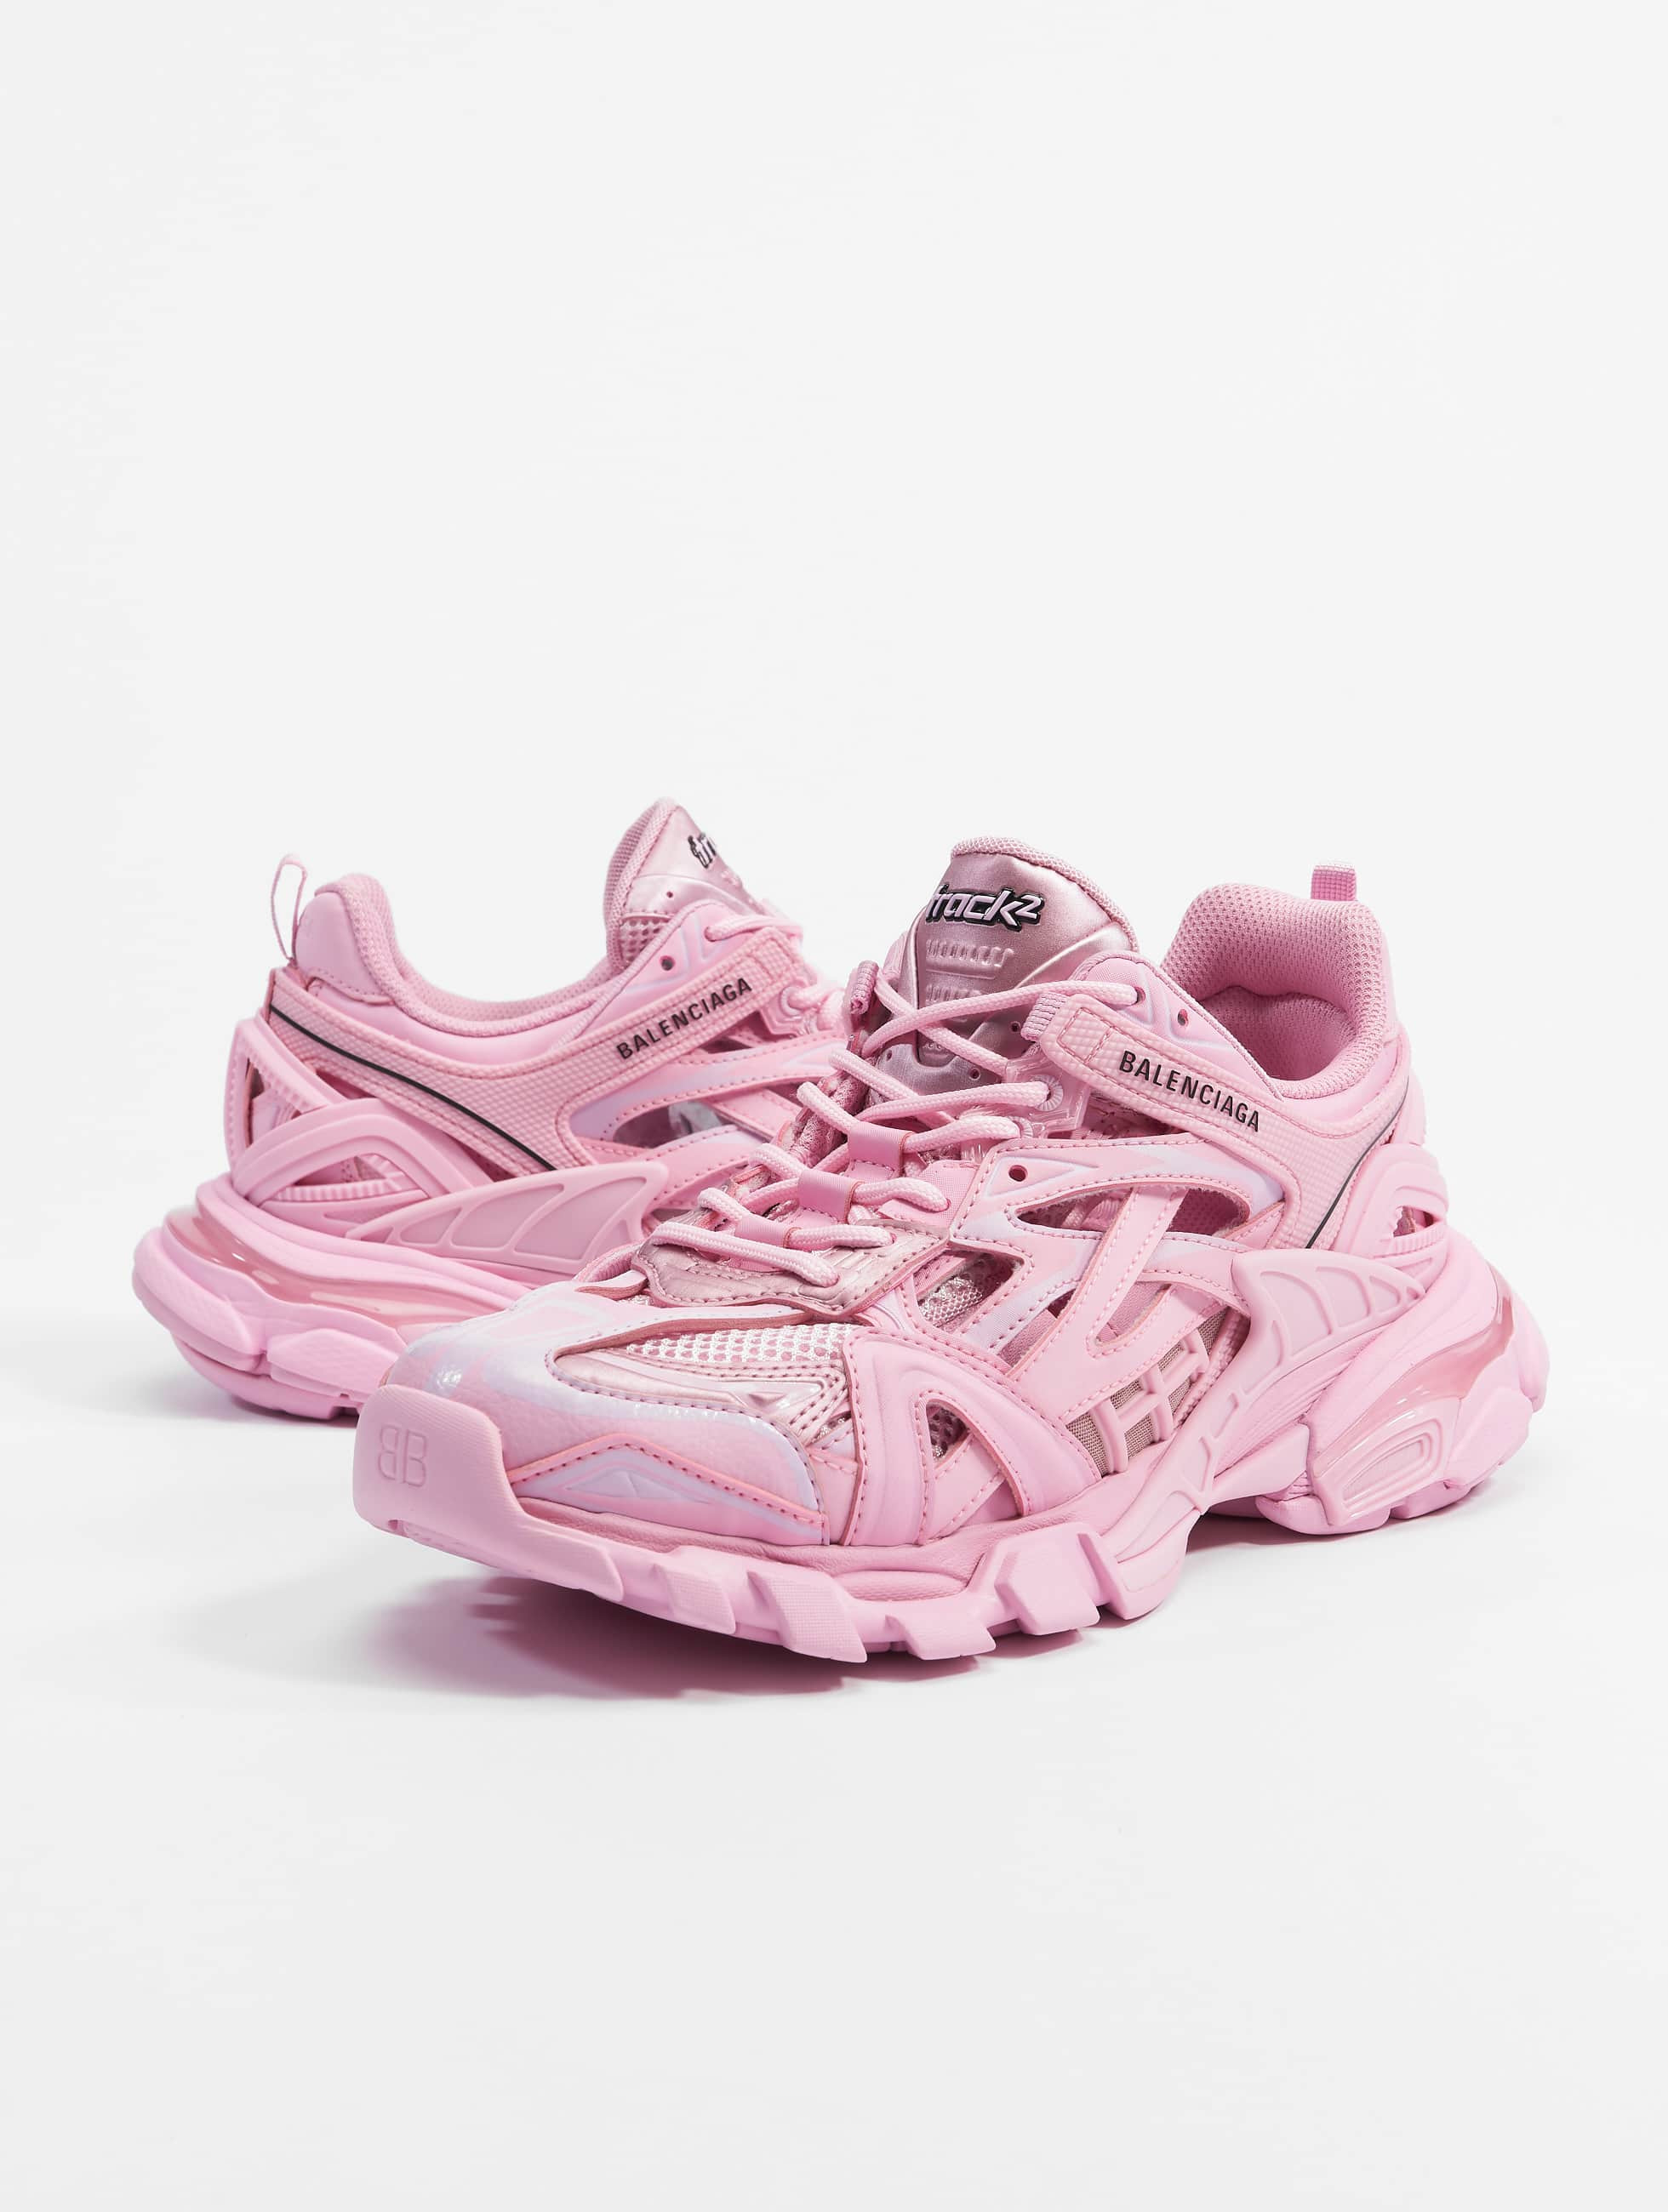 bestøve Diskutere Ikke vigtigt Balenciaga Sko / Sneakers TRACK.2 i pink 909795